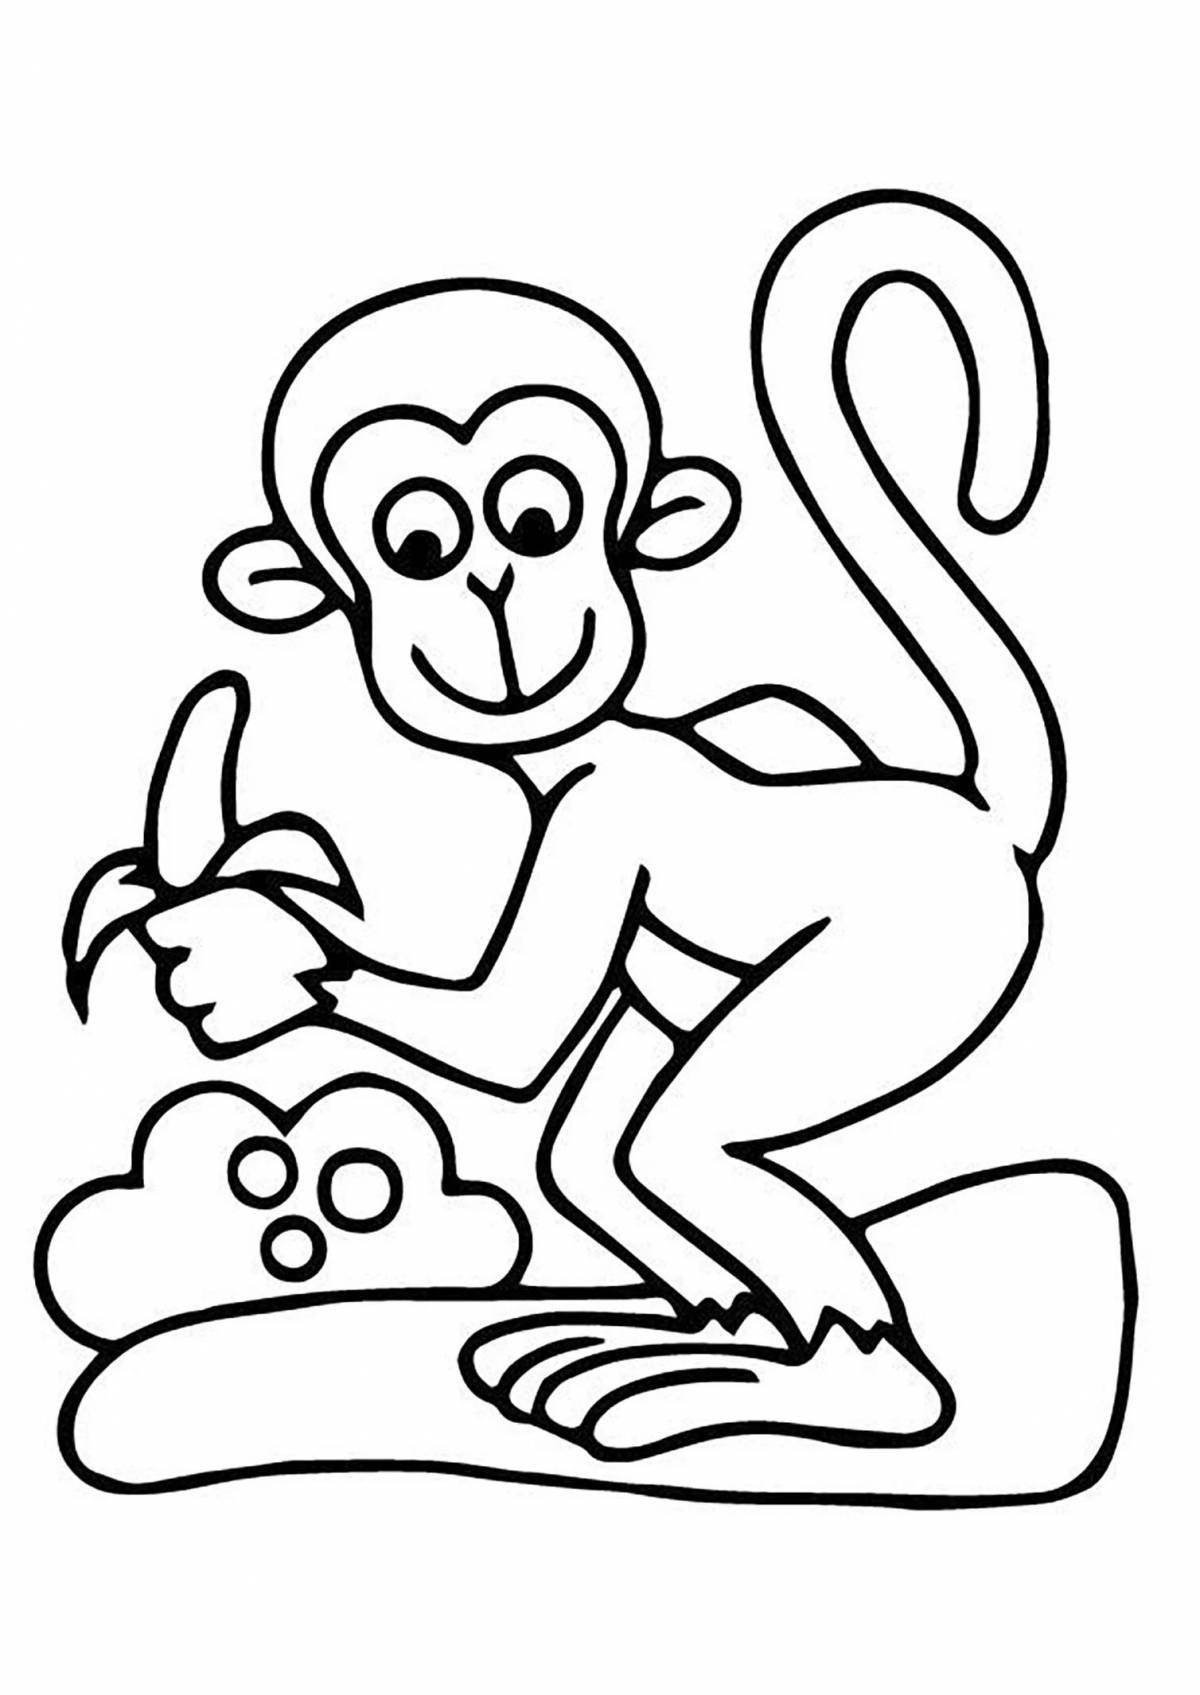 Fancy monkey drawing for kids